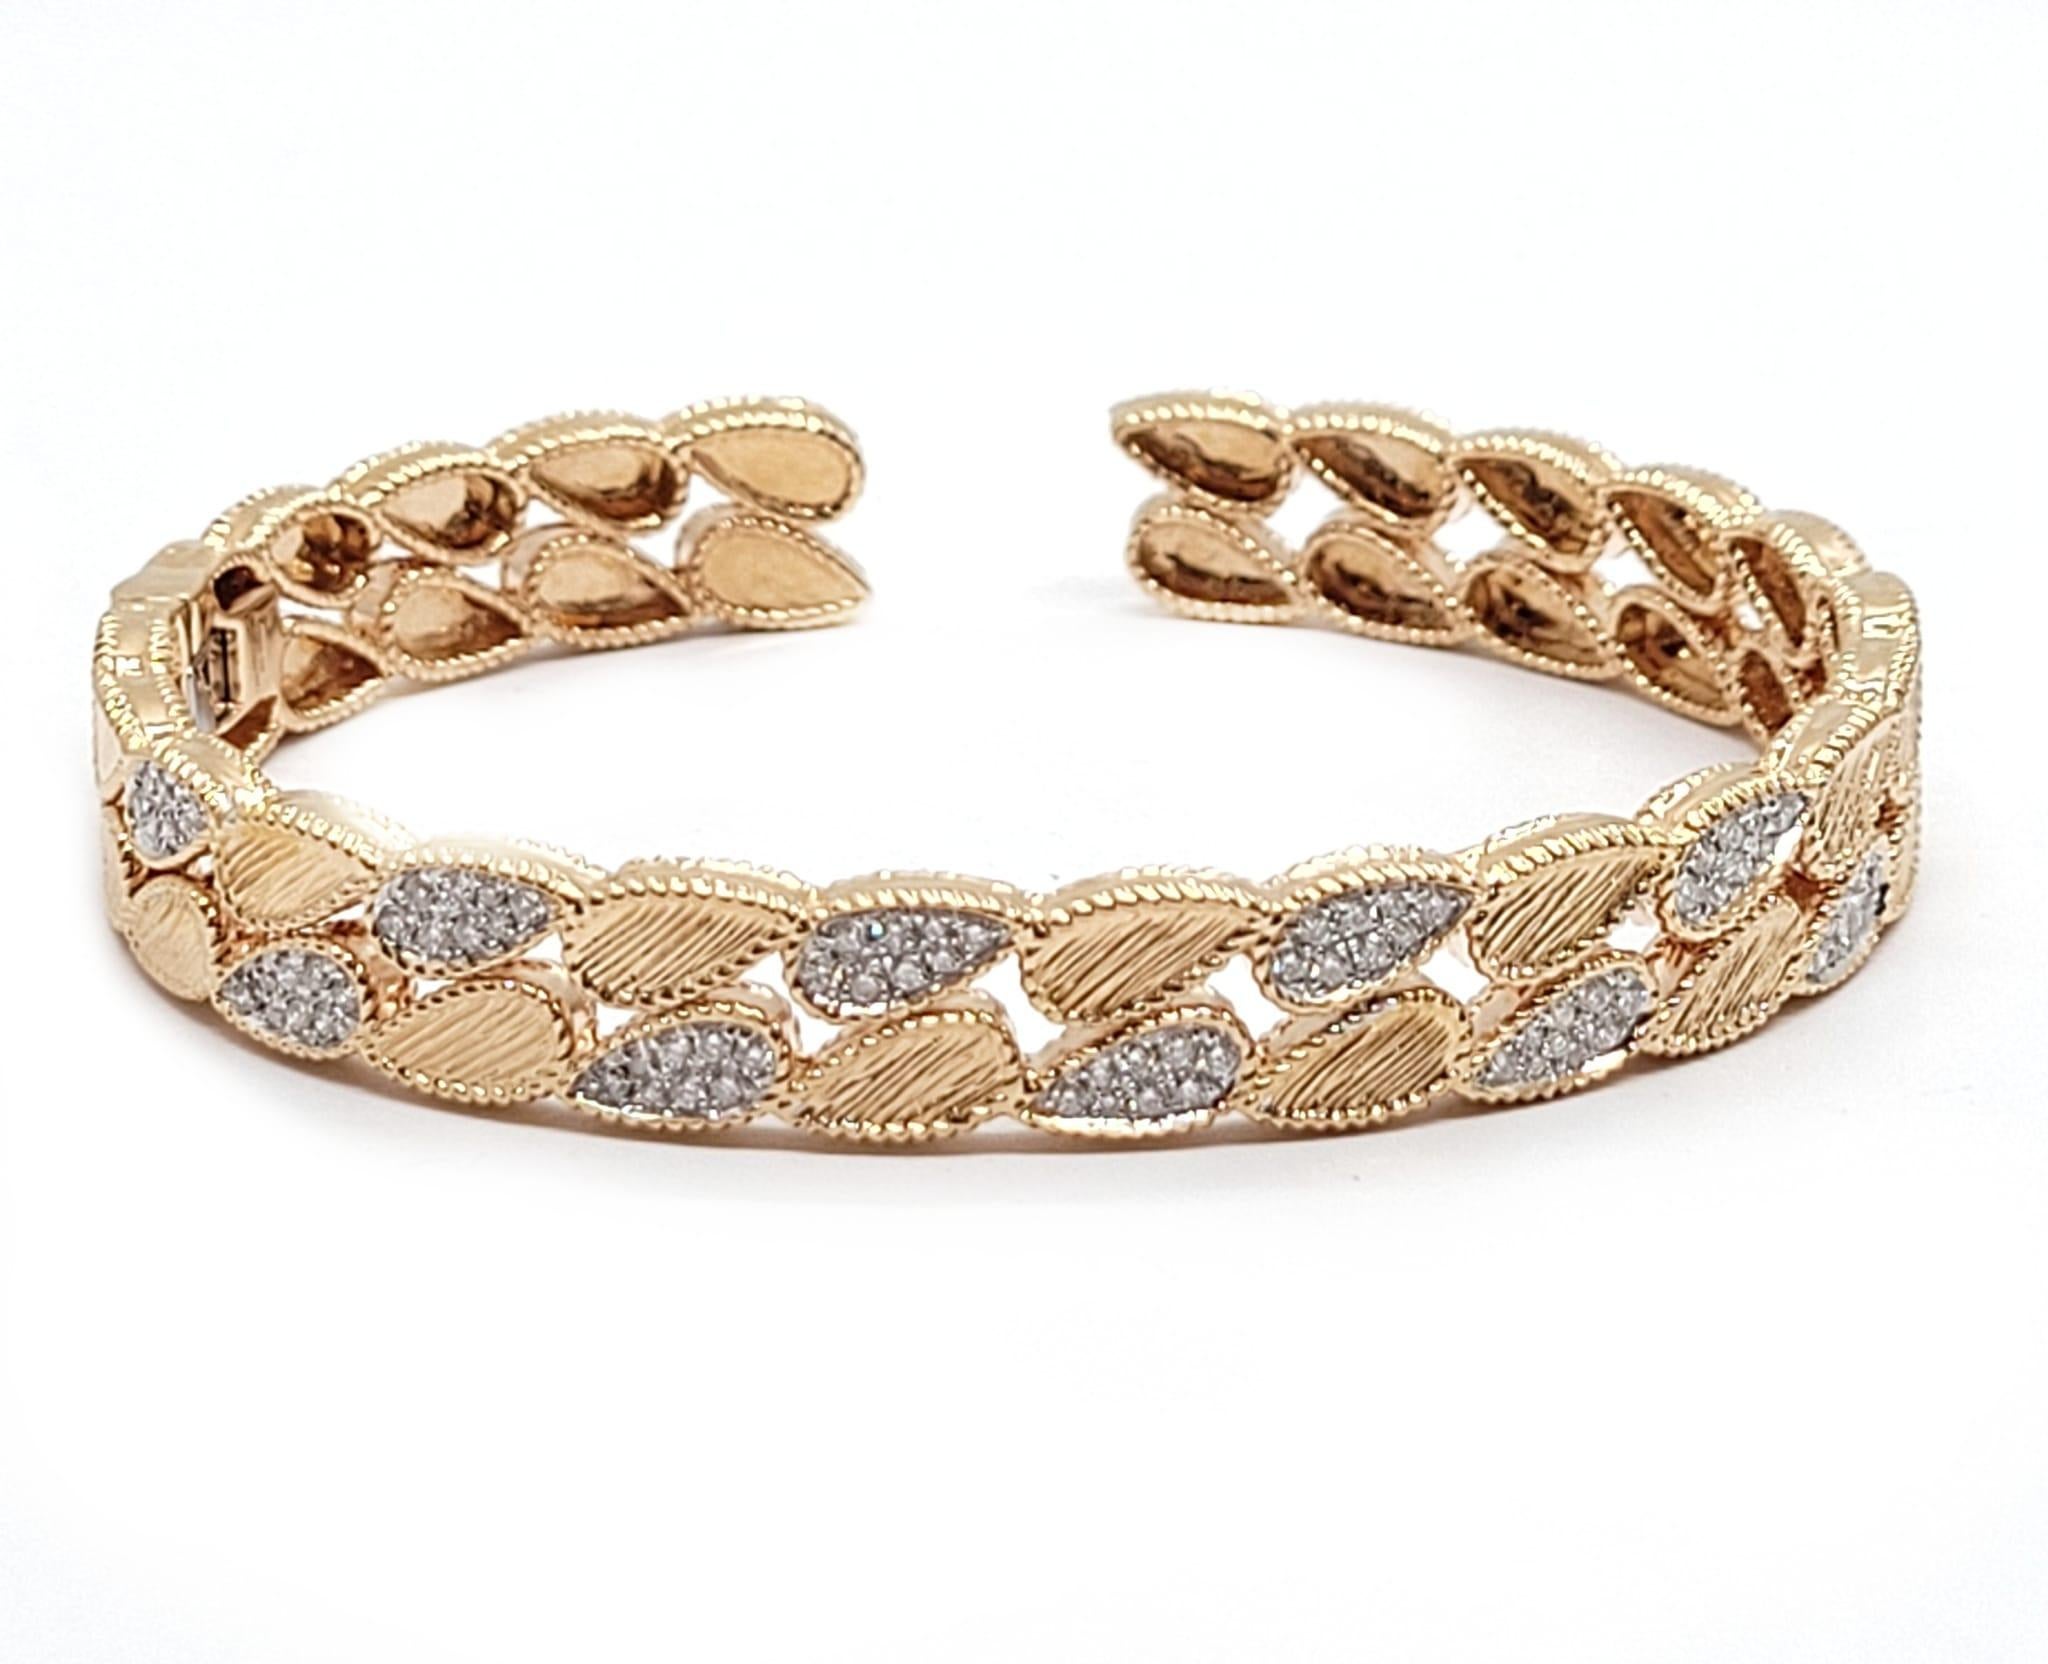 Andreoli Bracelet en or rose 18 carats avec diamants de 1,65 carat

Ce bracelet présente les caractéristiques suivantes
- Diamant de 1,65 carat
- 25.33 Grammes Or Rose 18K
- Fabriqué en Italie